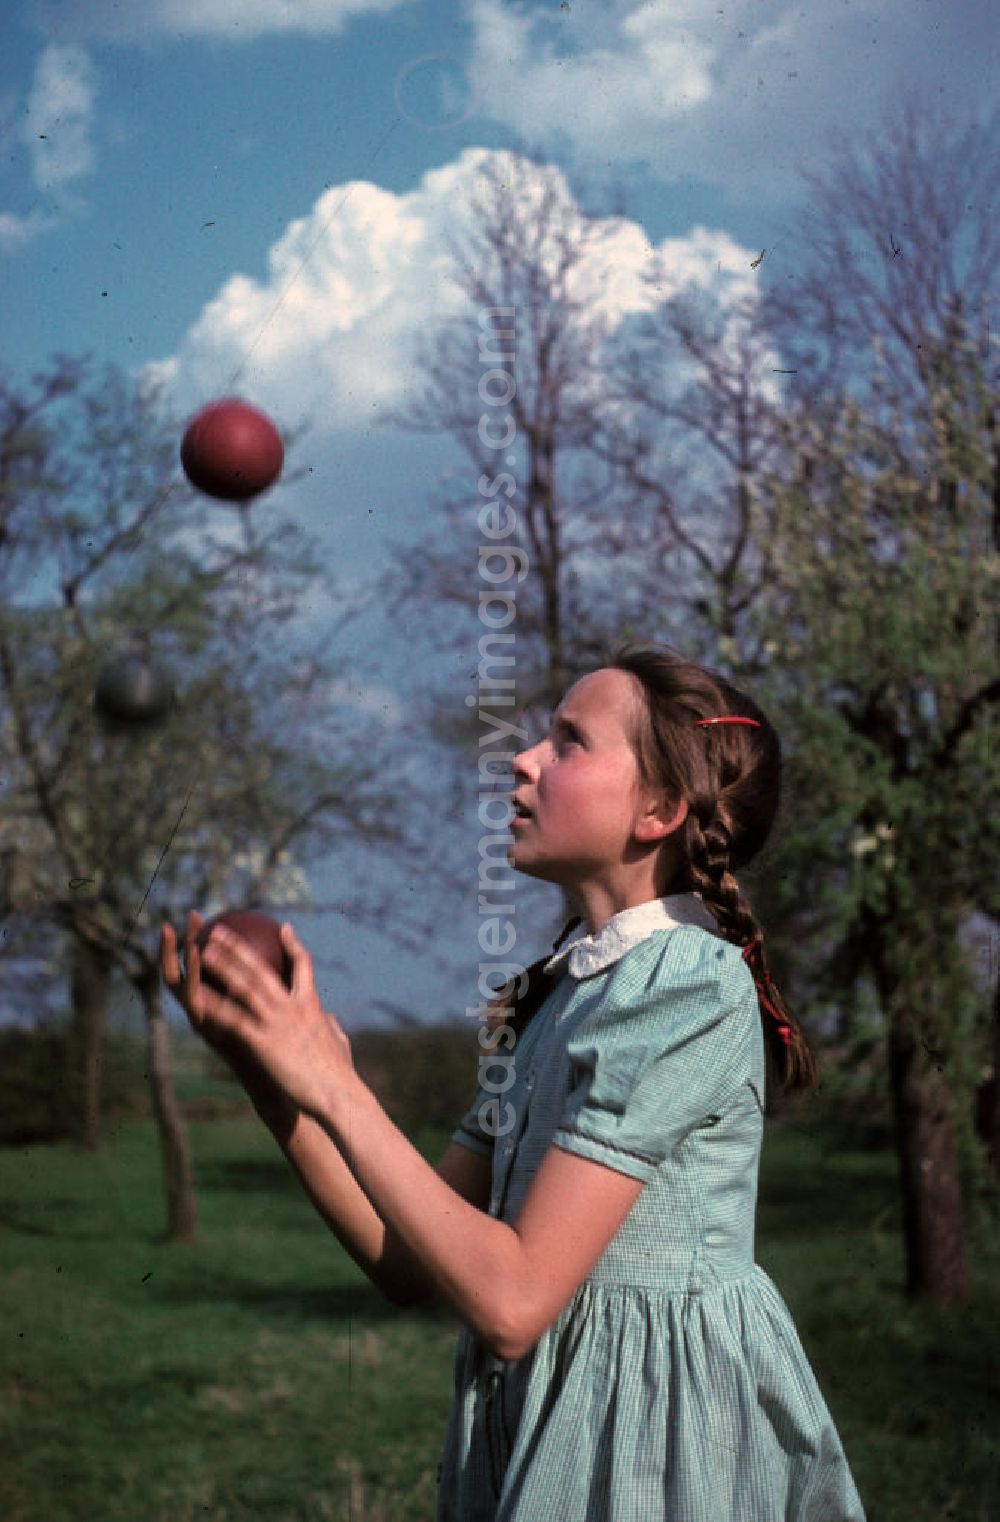 GDR photo archive: Bad Godesberg - Ein Mädchen jongliert mit drei Bällen in einem Park in Bad Godesberg. A girl juggling with three balls in a park in Bad Godesberg.